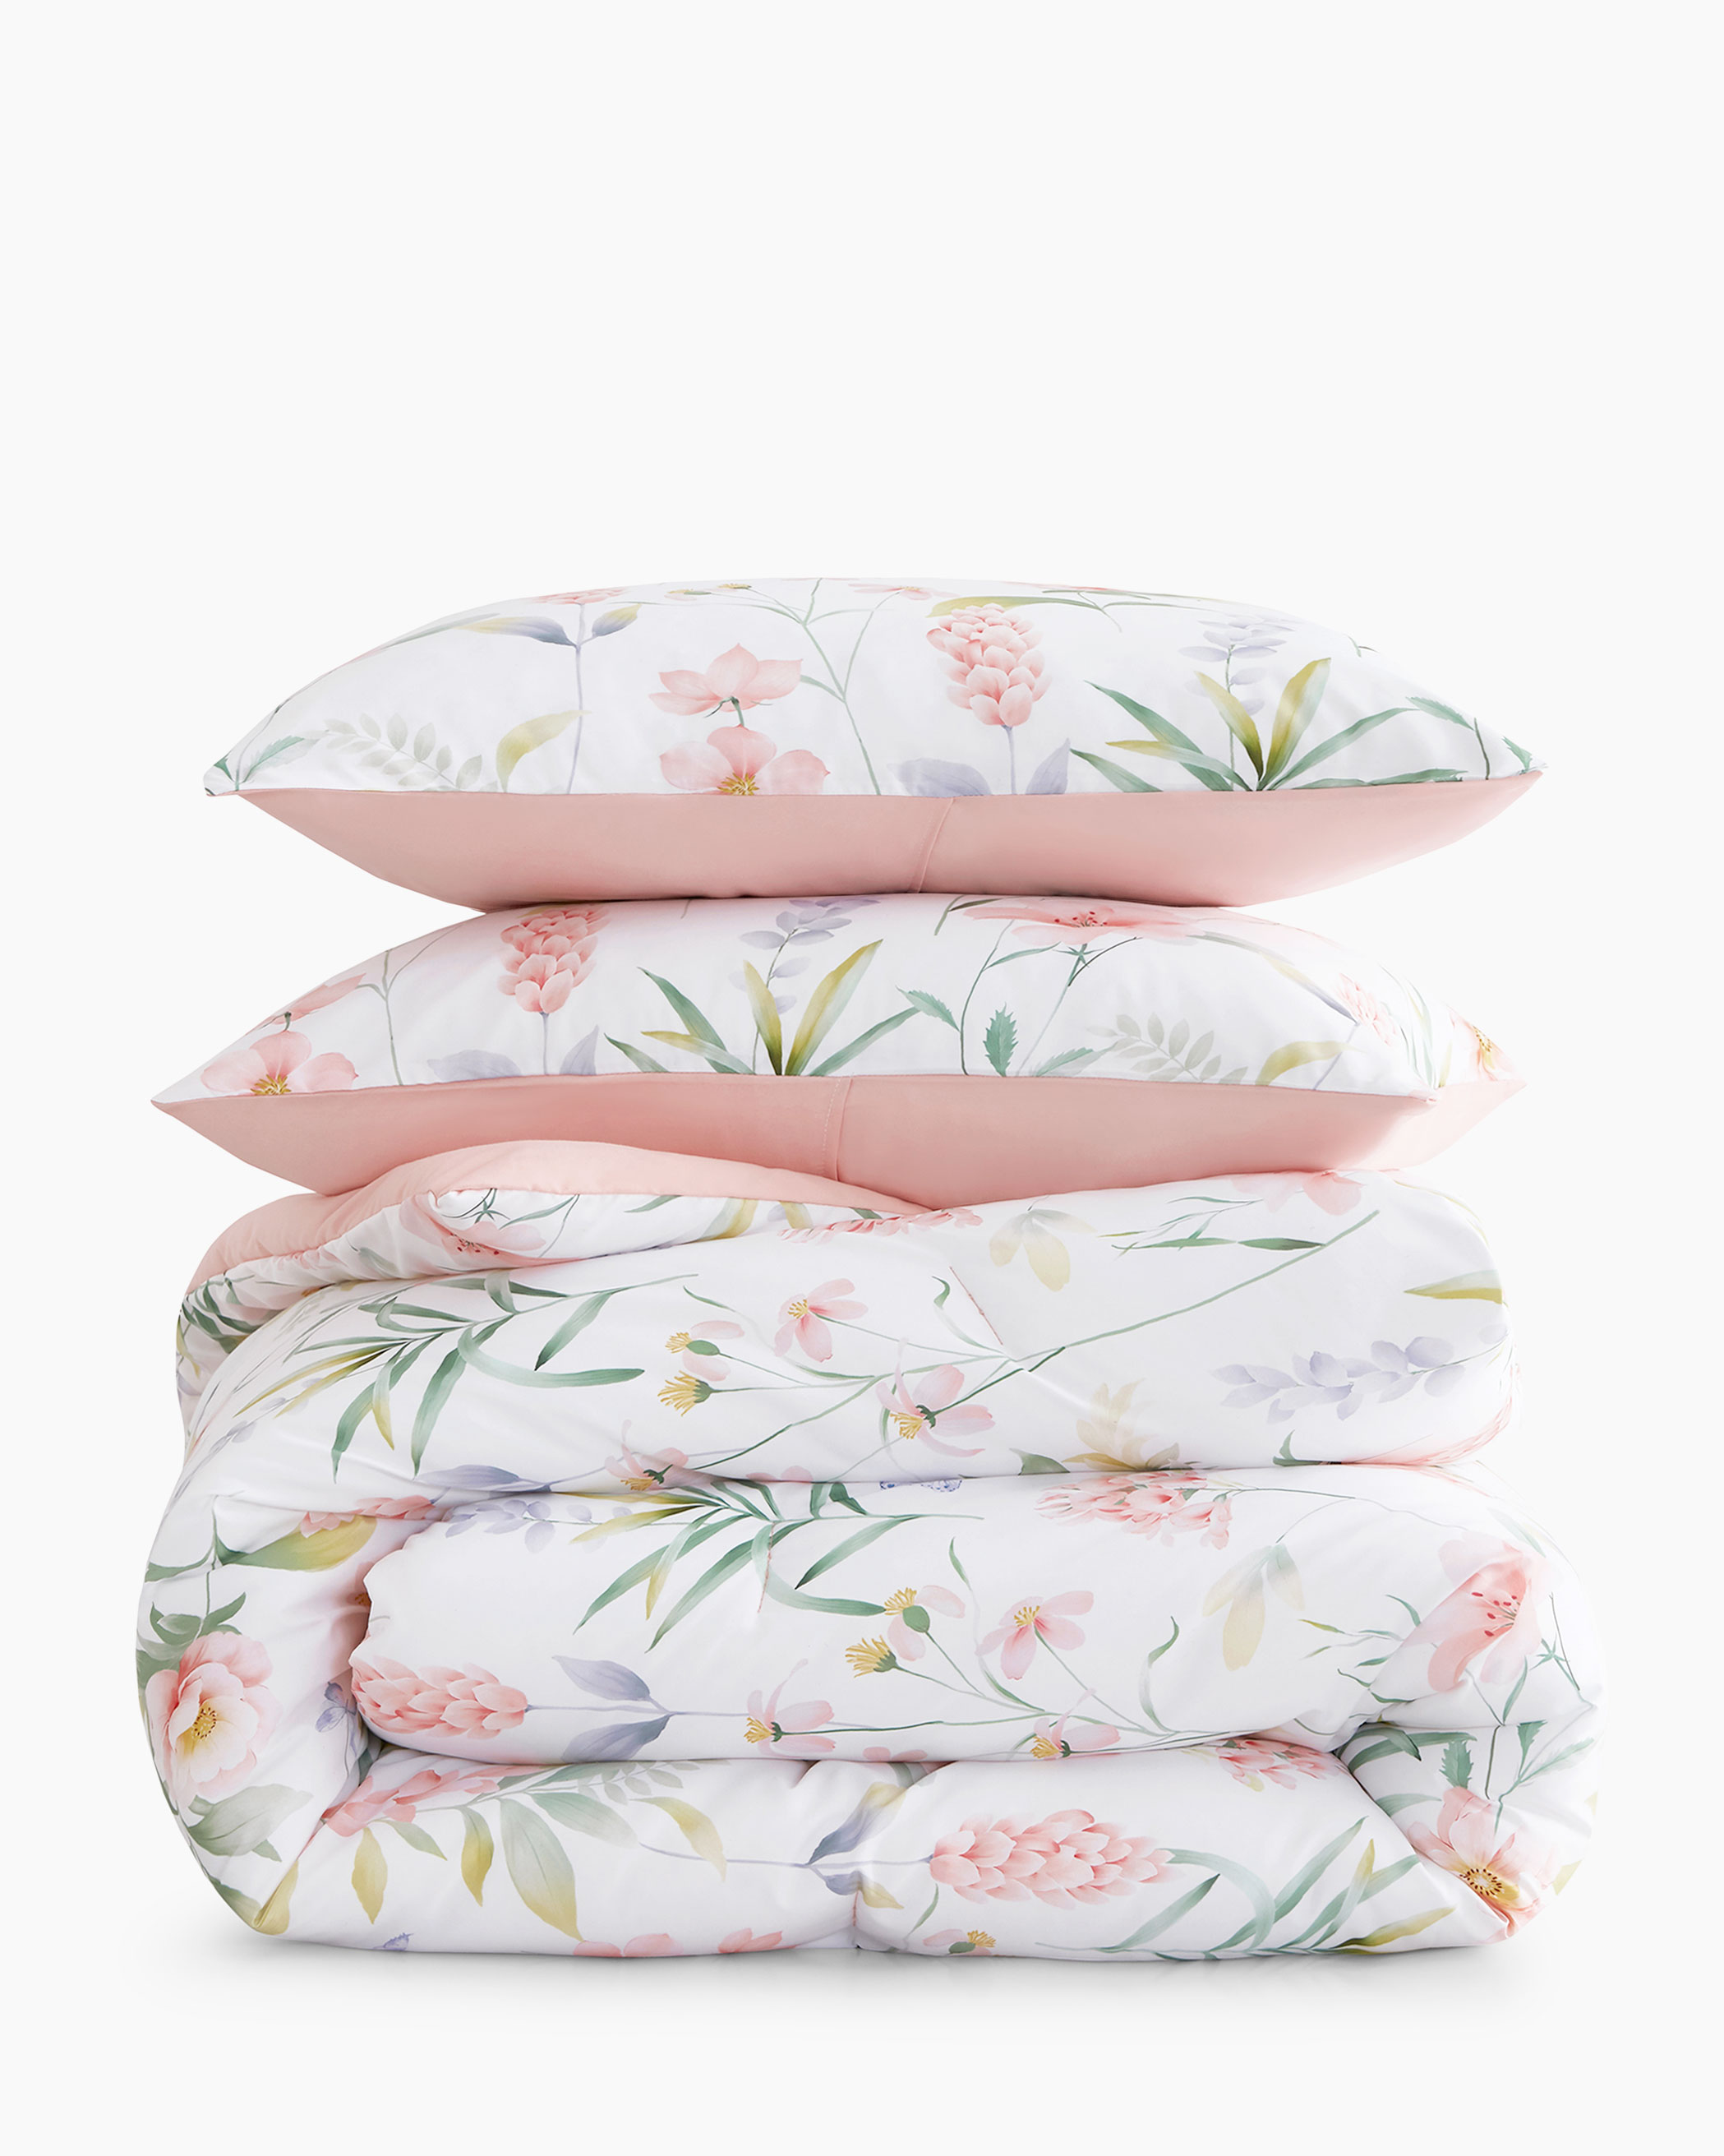 Pink Floral Microfiber Comforter Set